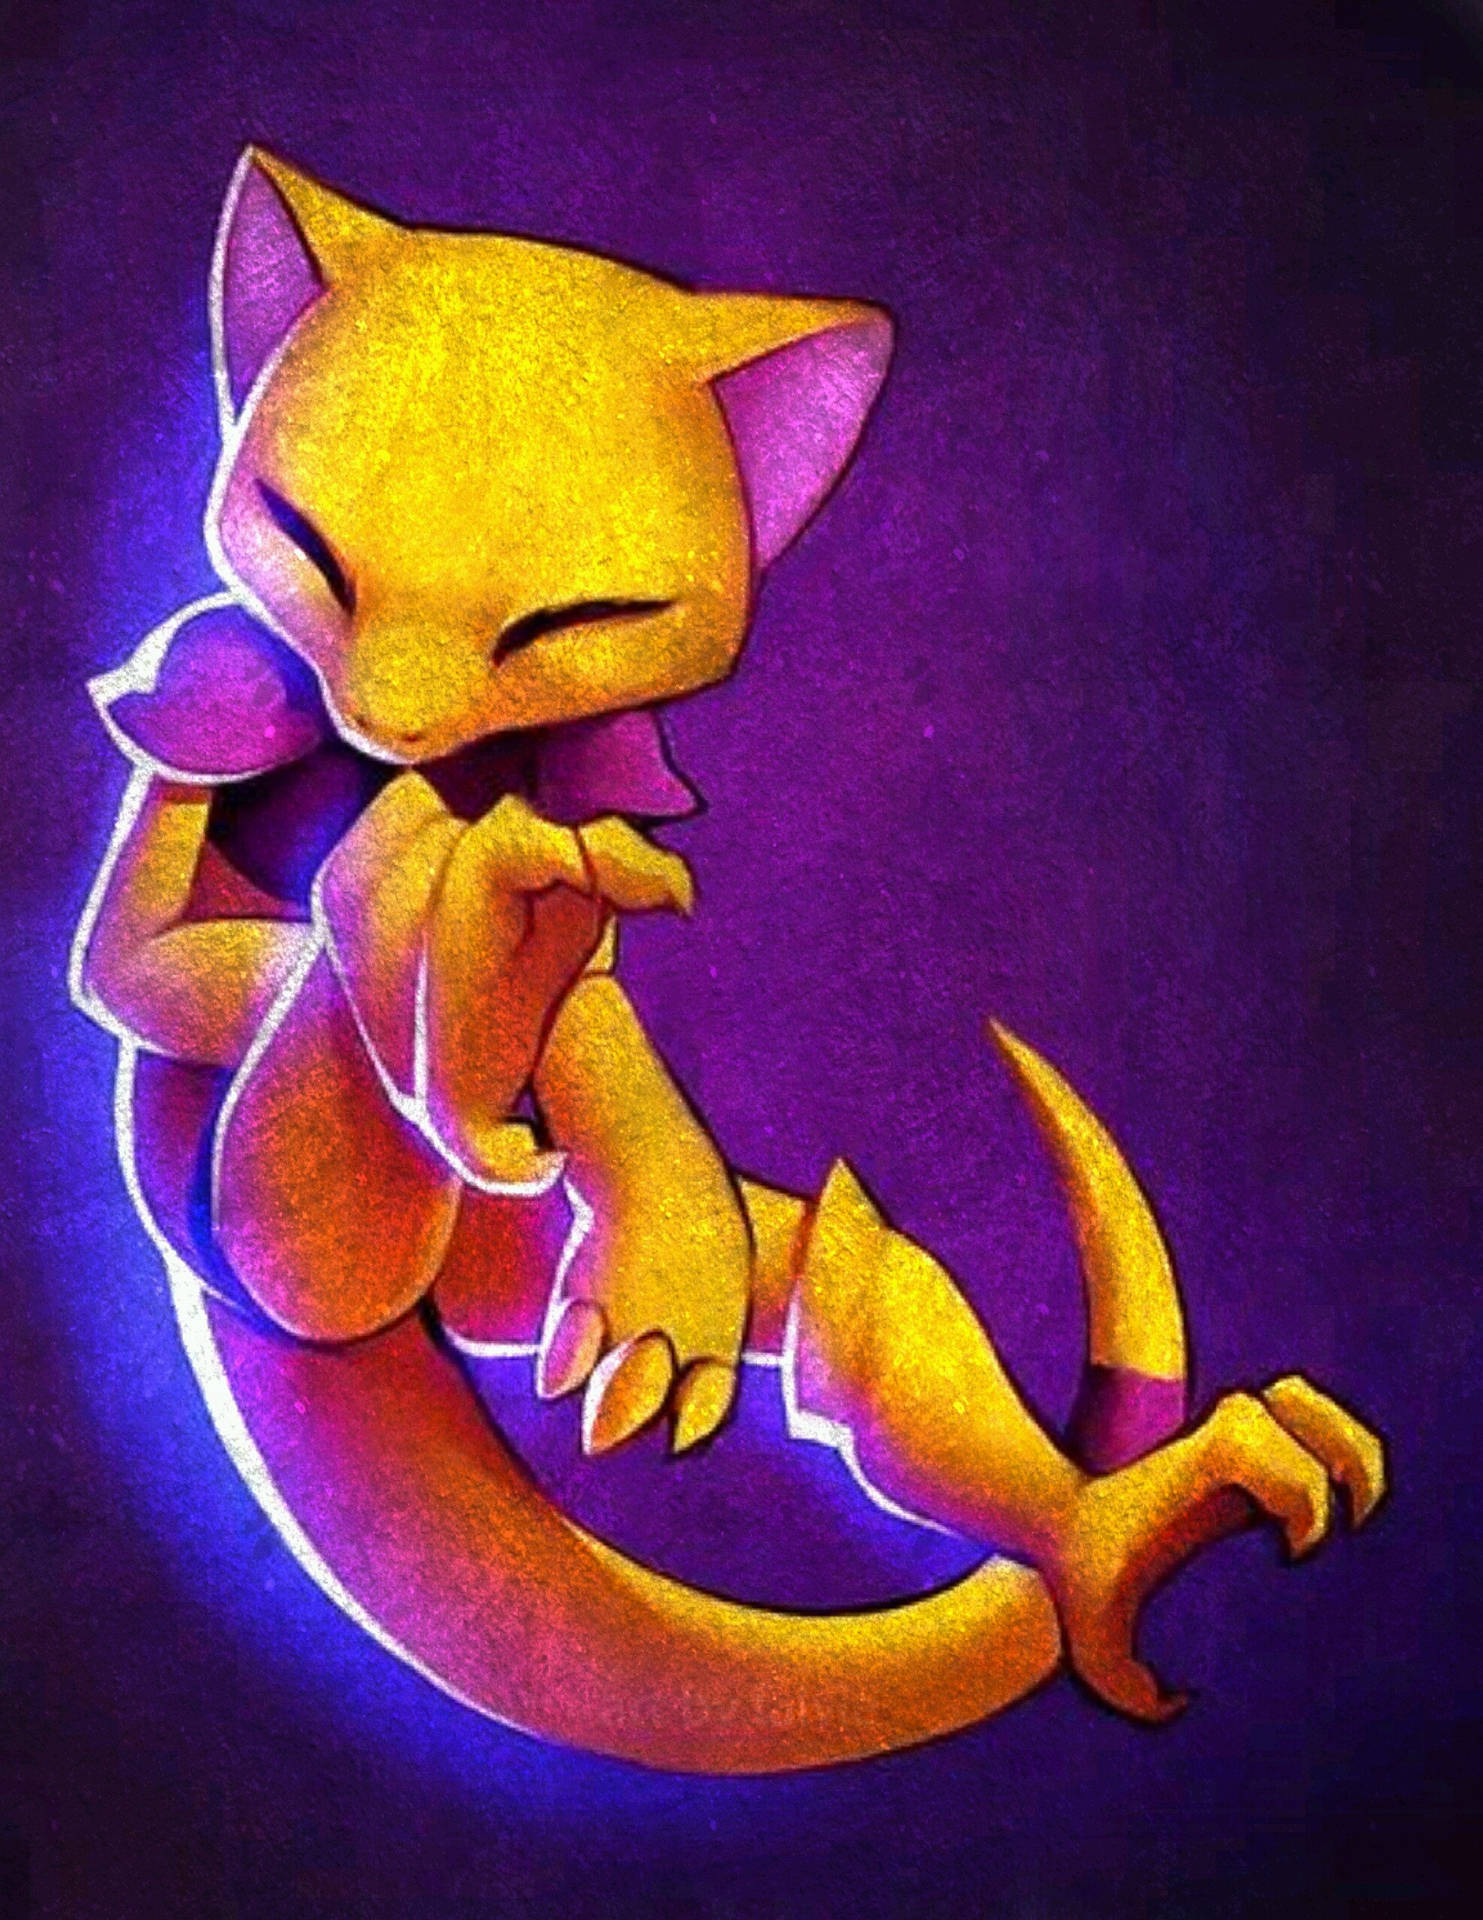 Utforskaen Ny Värld Med Vår Abra Pokémon-lila Bakgrundsbild För Dator Eller Mobiltelefon. Wallpaper